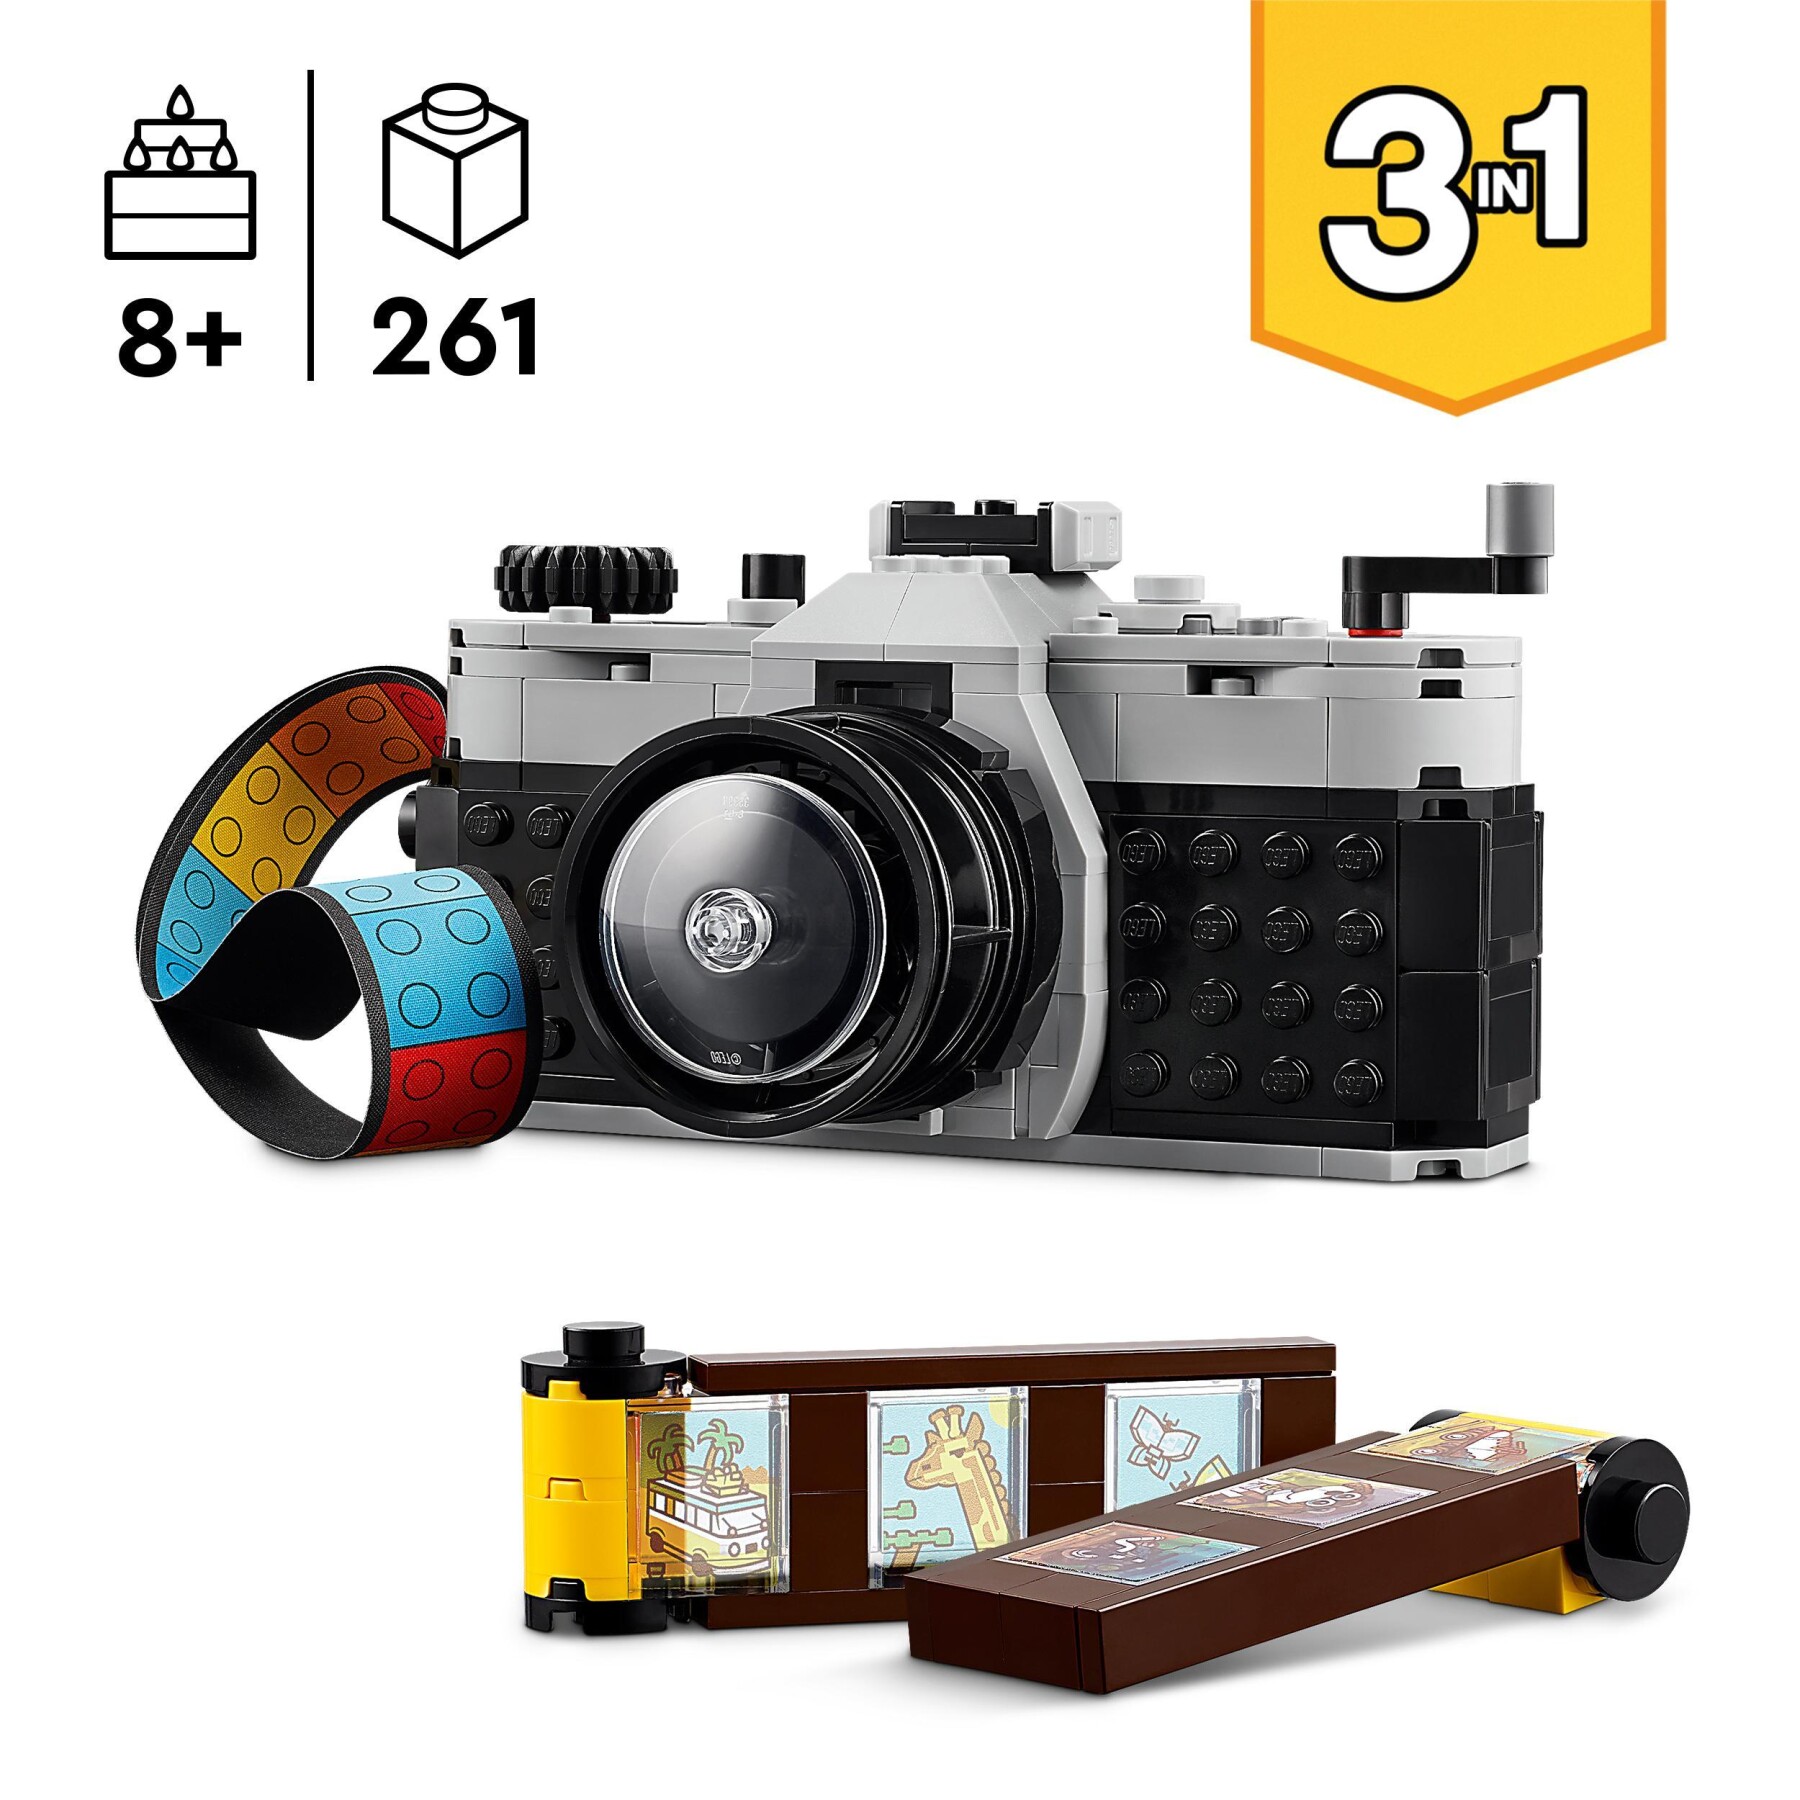 Lego creator 31147 3in1 fotocamera retro, giochi per bambini 8+ anni, macchina fotografica trasformabile in videcamera o tv - LEGO CREATOR